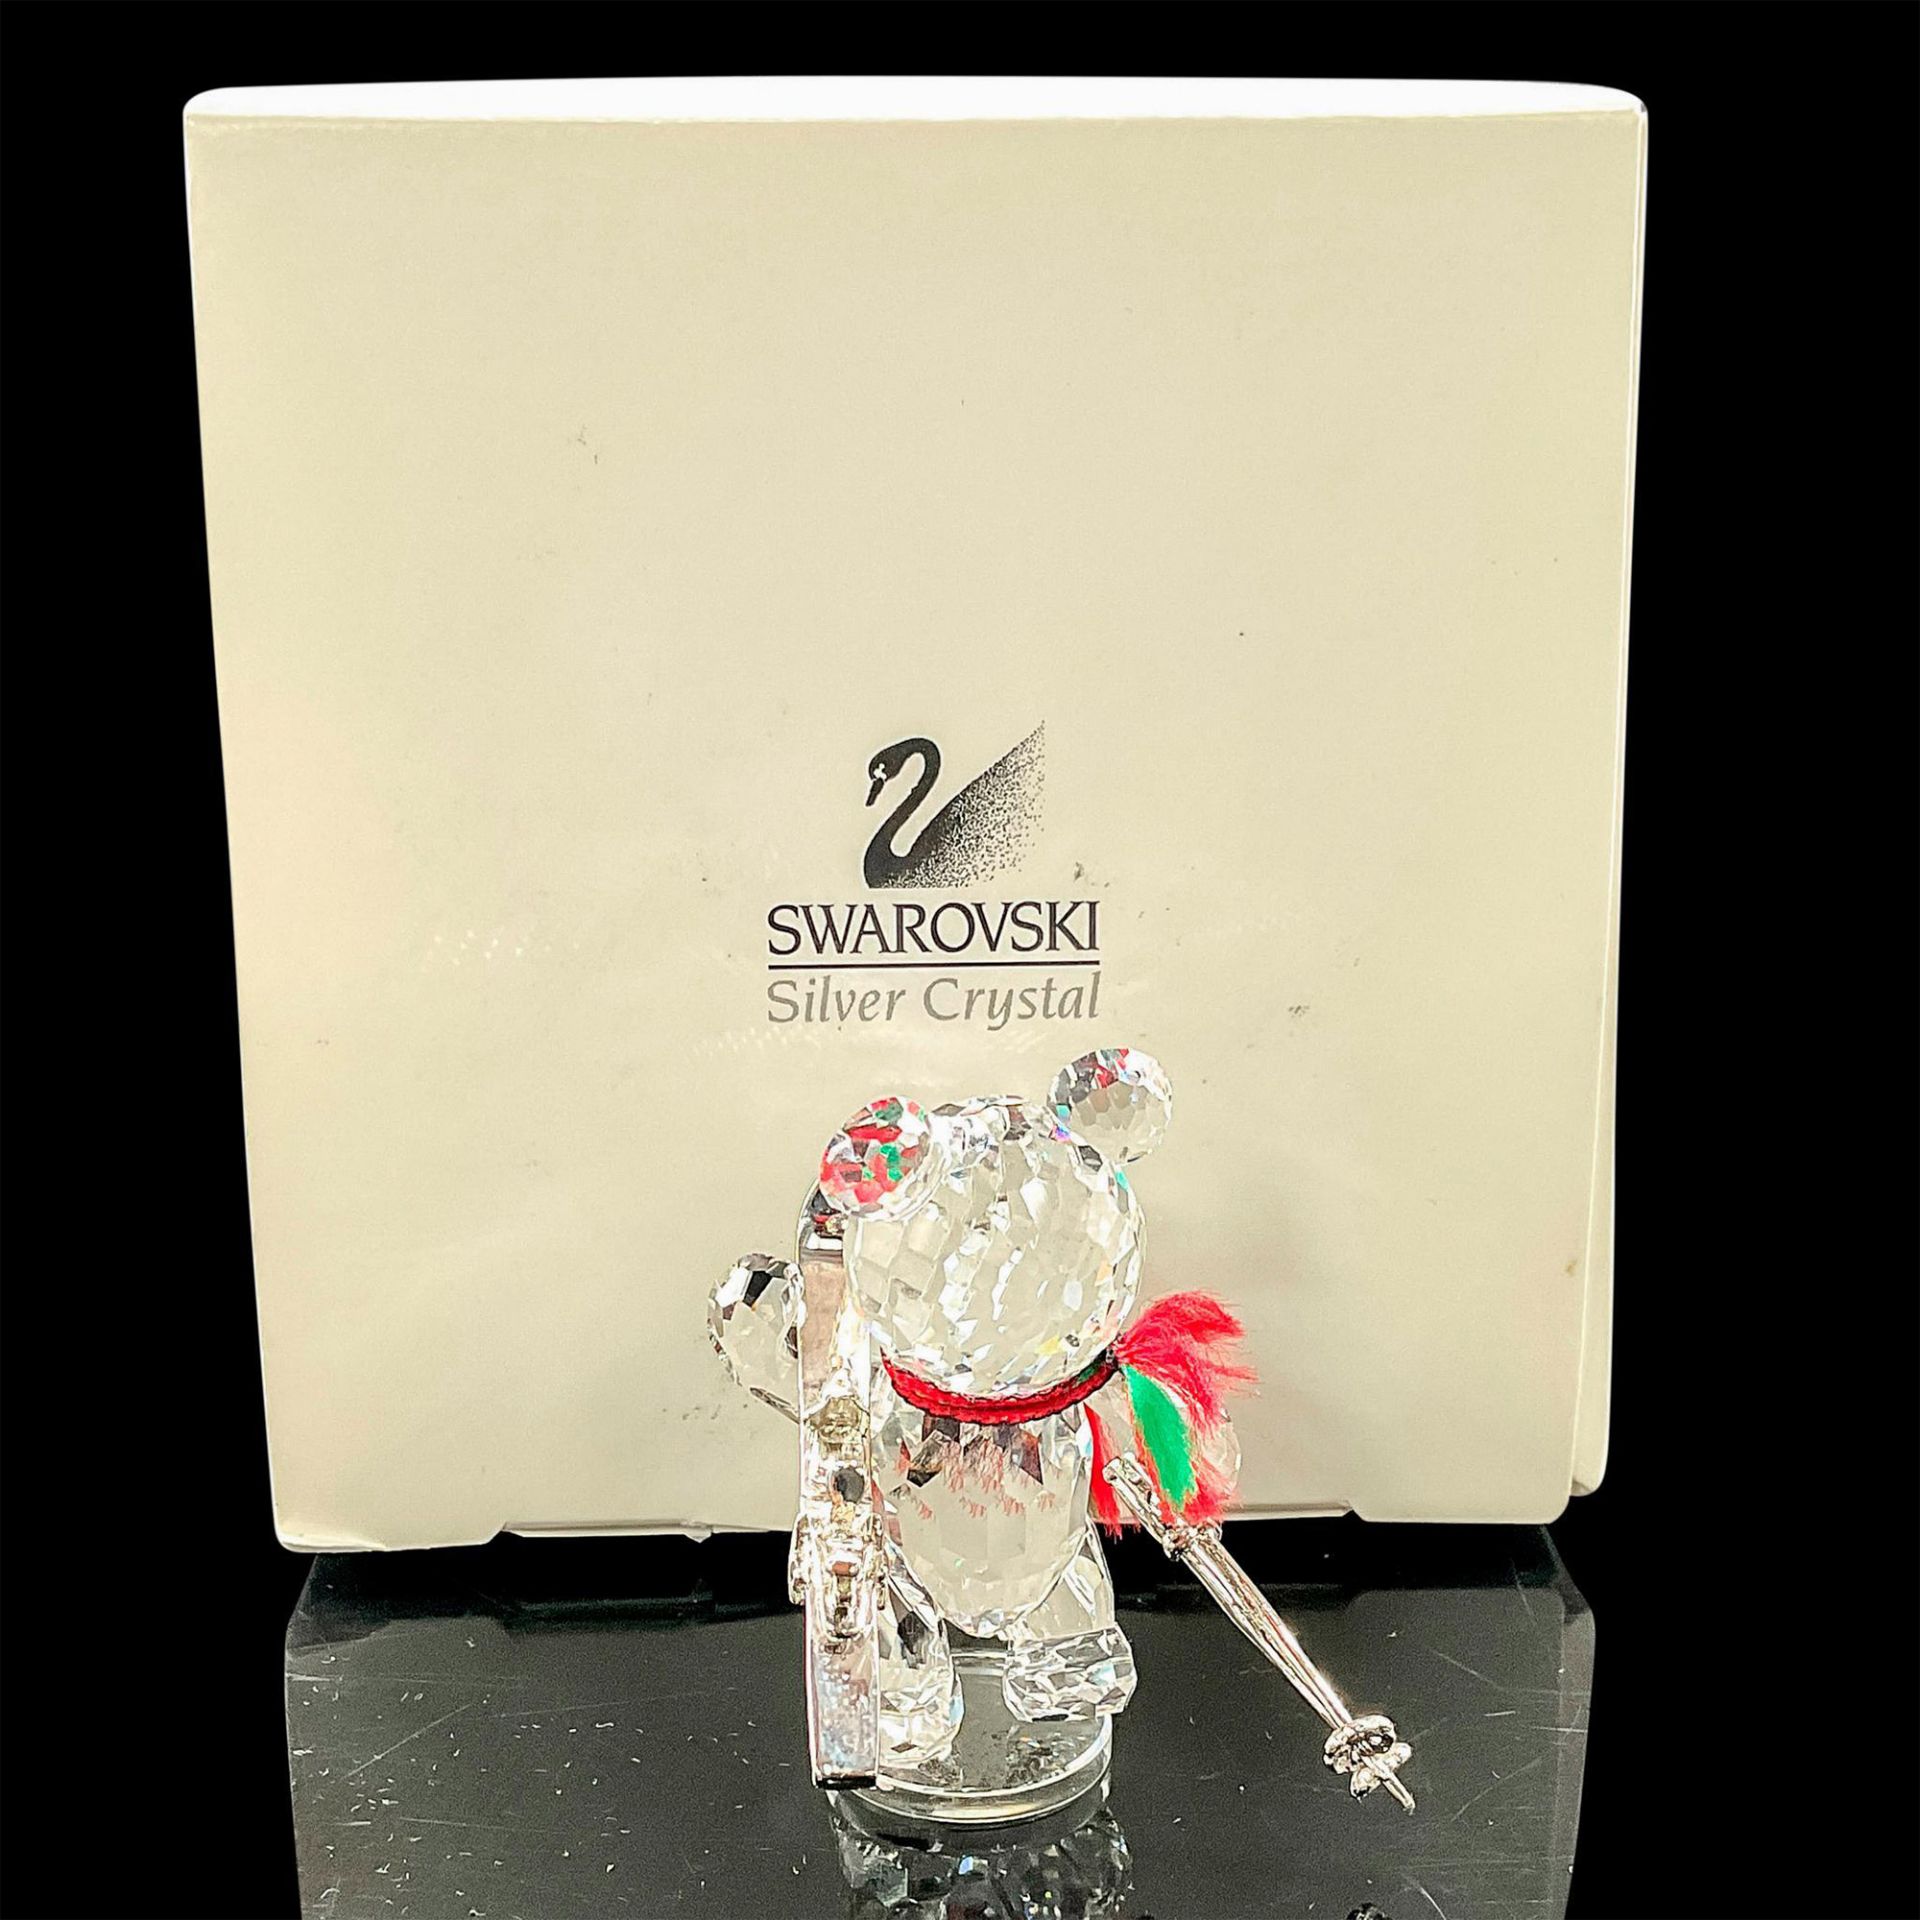 Swarovski Crystal Figurine, Kris Bear with Skis - Image 2 of 3